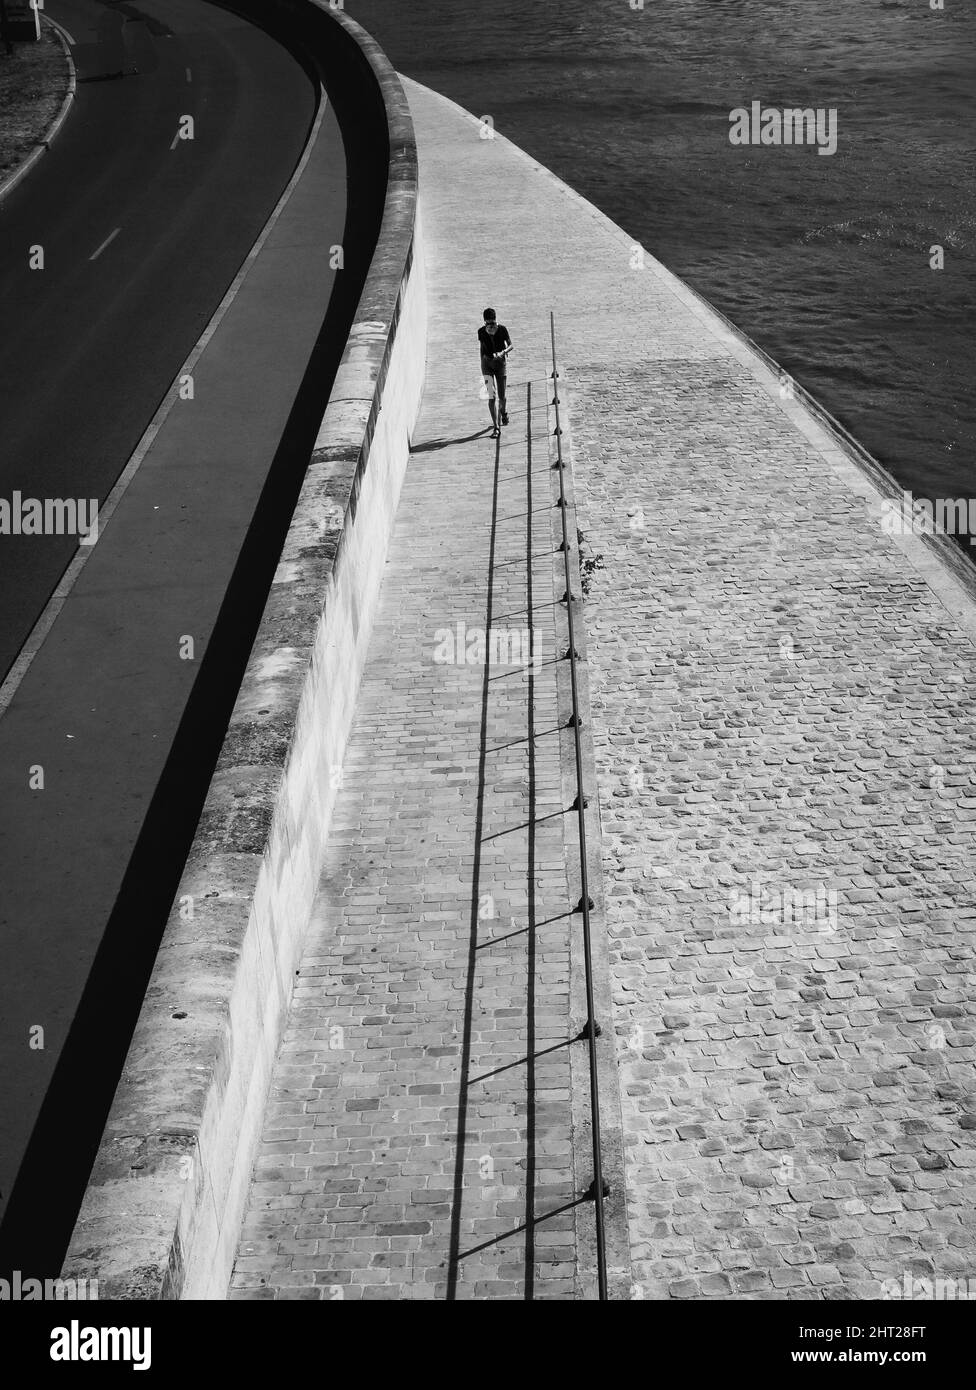 Scatto aereo verticale di una persona che cammina accanto al marciapiede pavimentato girato in scala di grigi Foto Stock